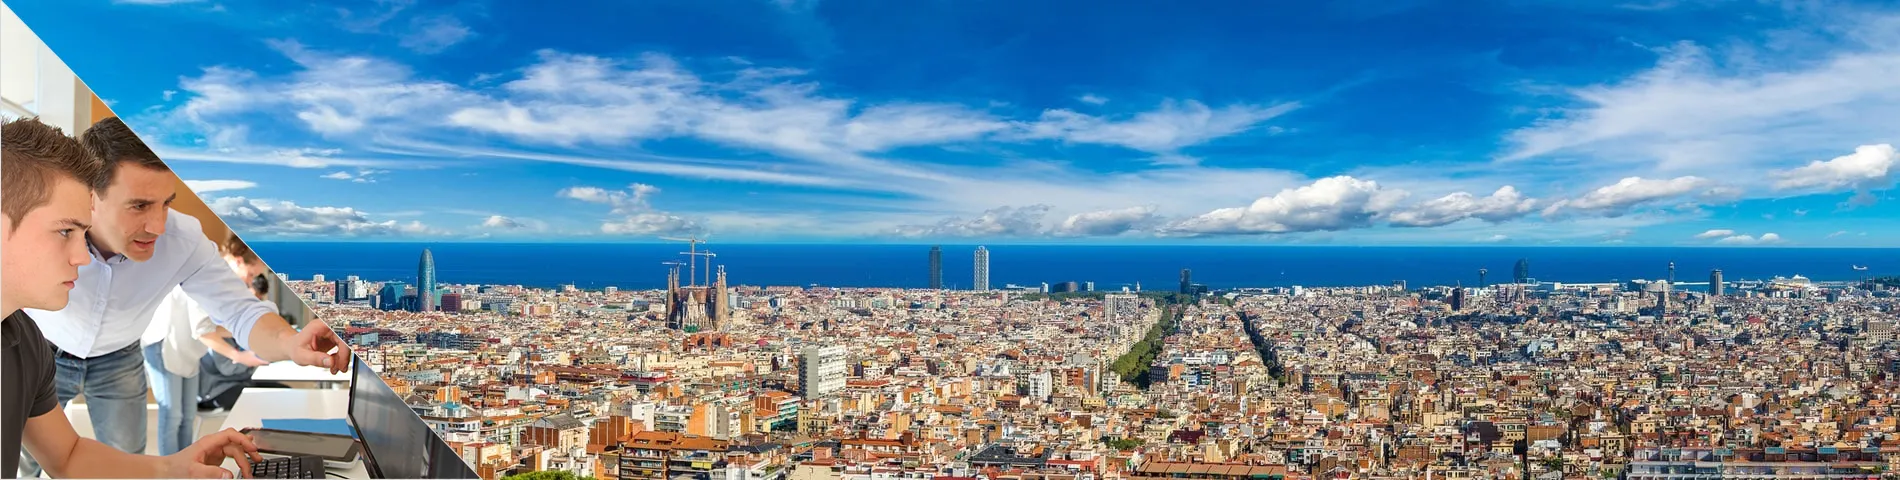 바르셀로나 - 인턴쉽 프로그램